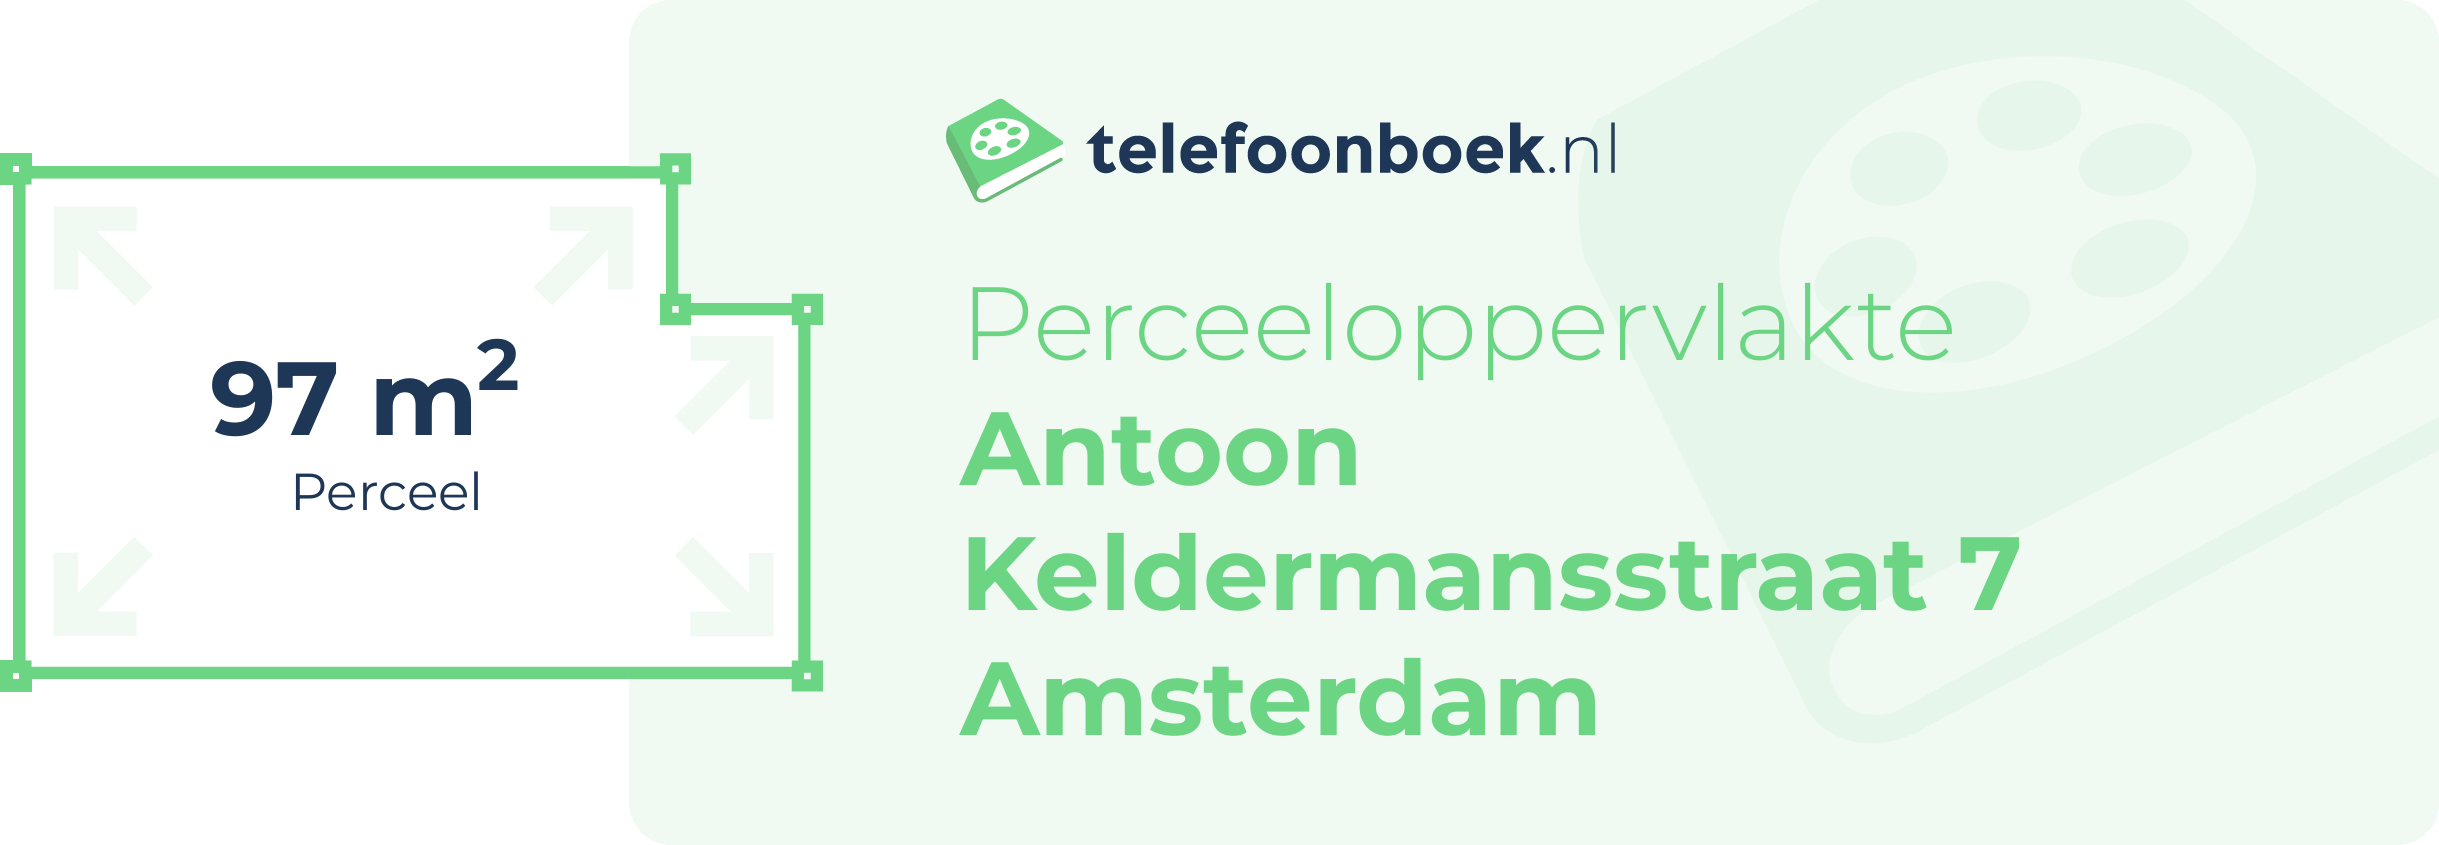 Perceeloppervlakte Antoon Keldermansstraat 7 Amsterdam